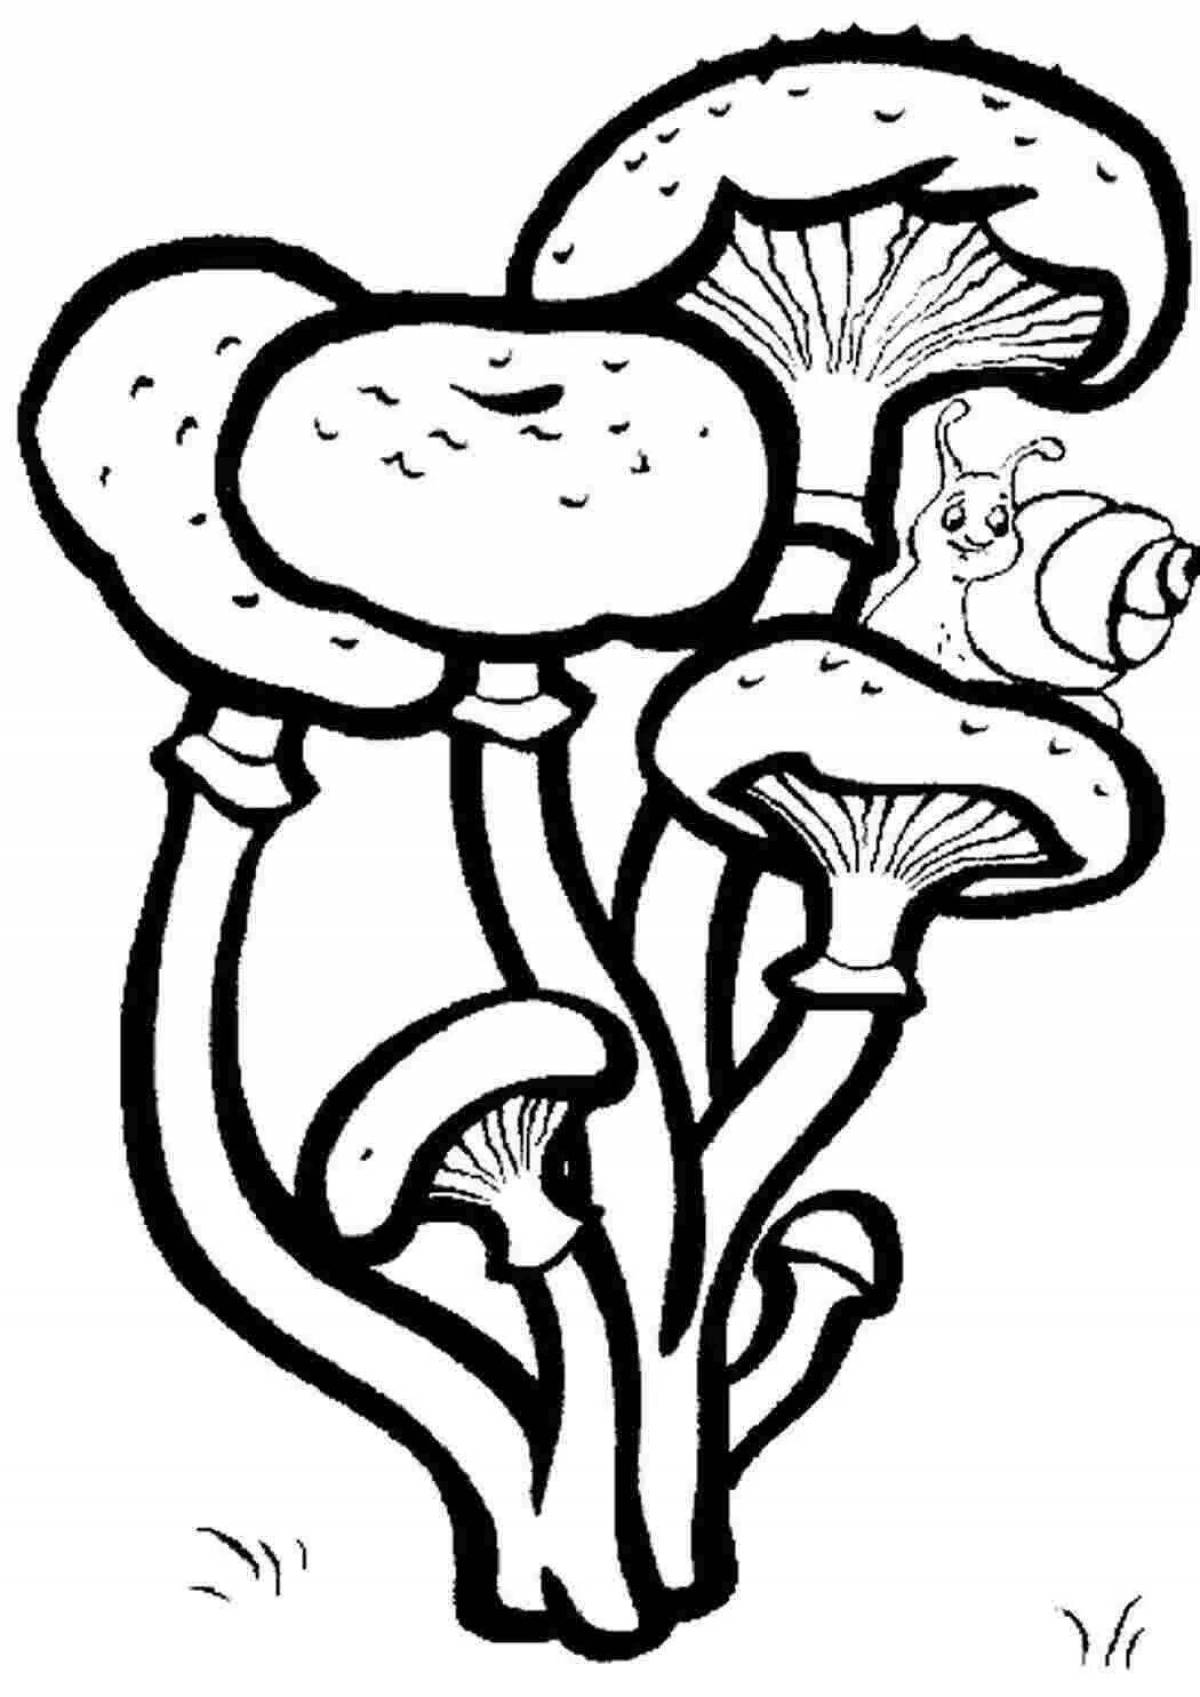 Рисунок светящегося гриба